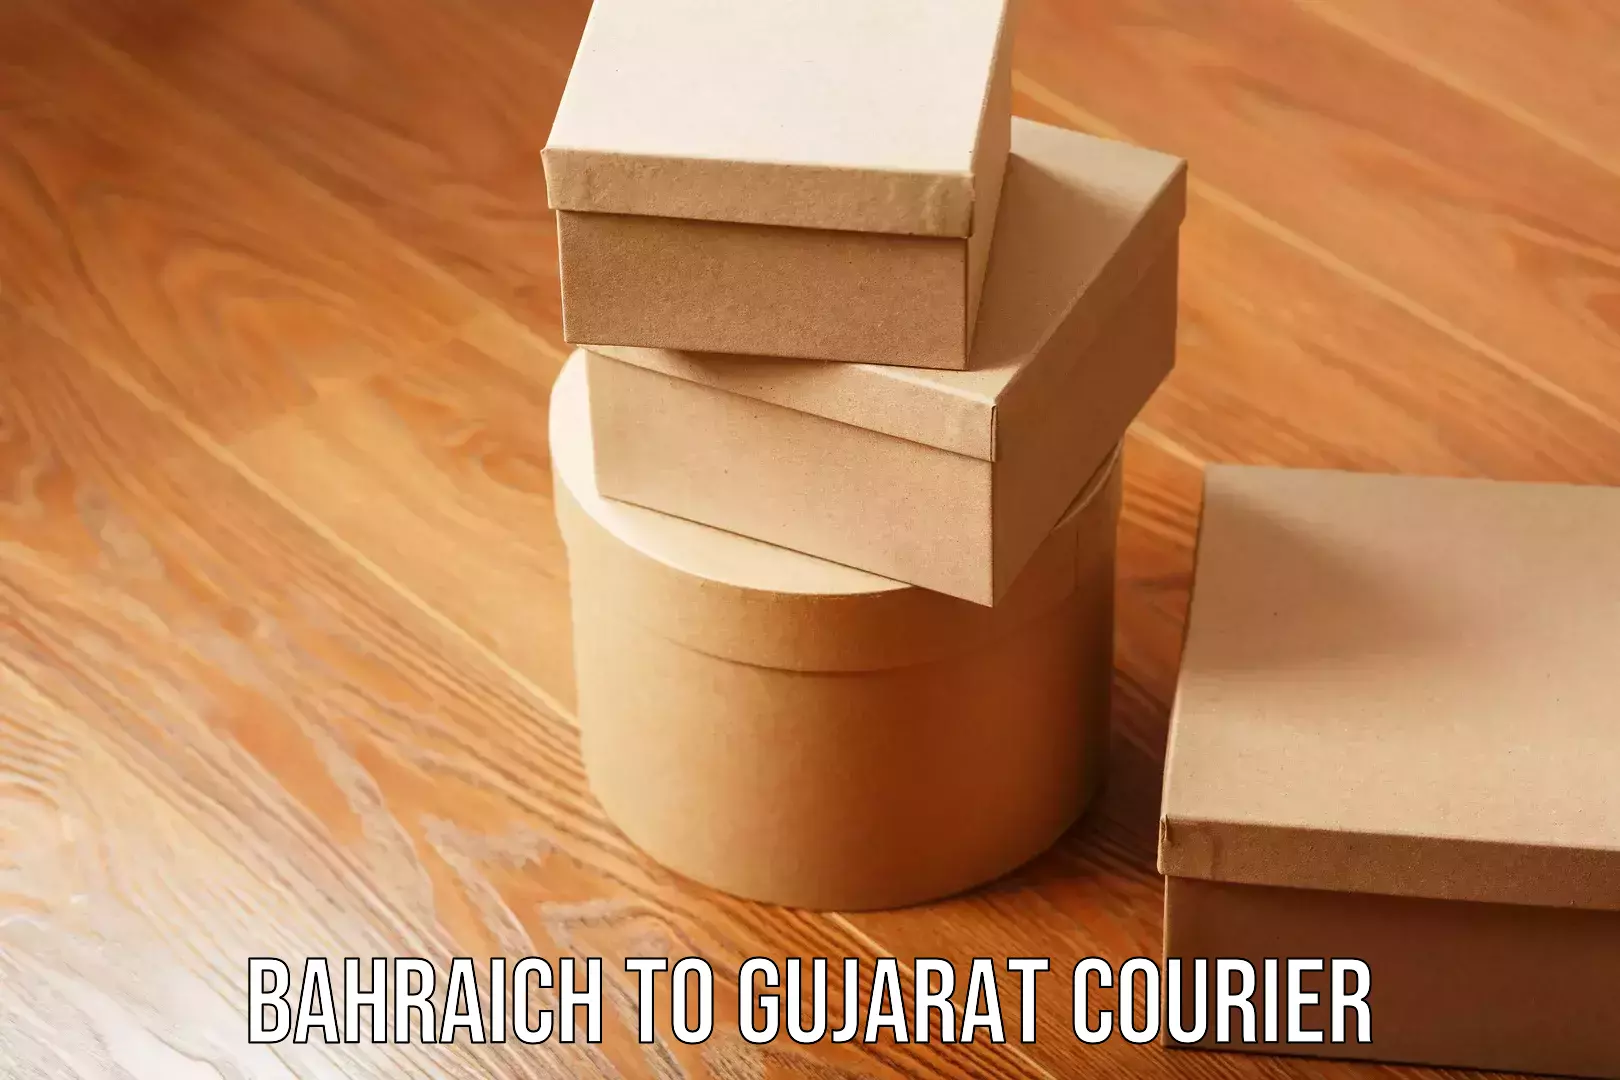 Enhanced shipping experience Bahraich to Gujarat